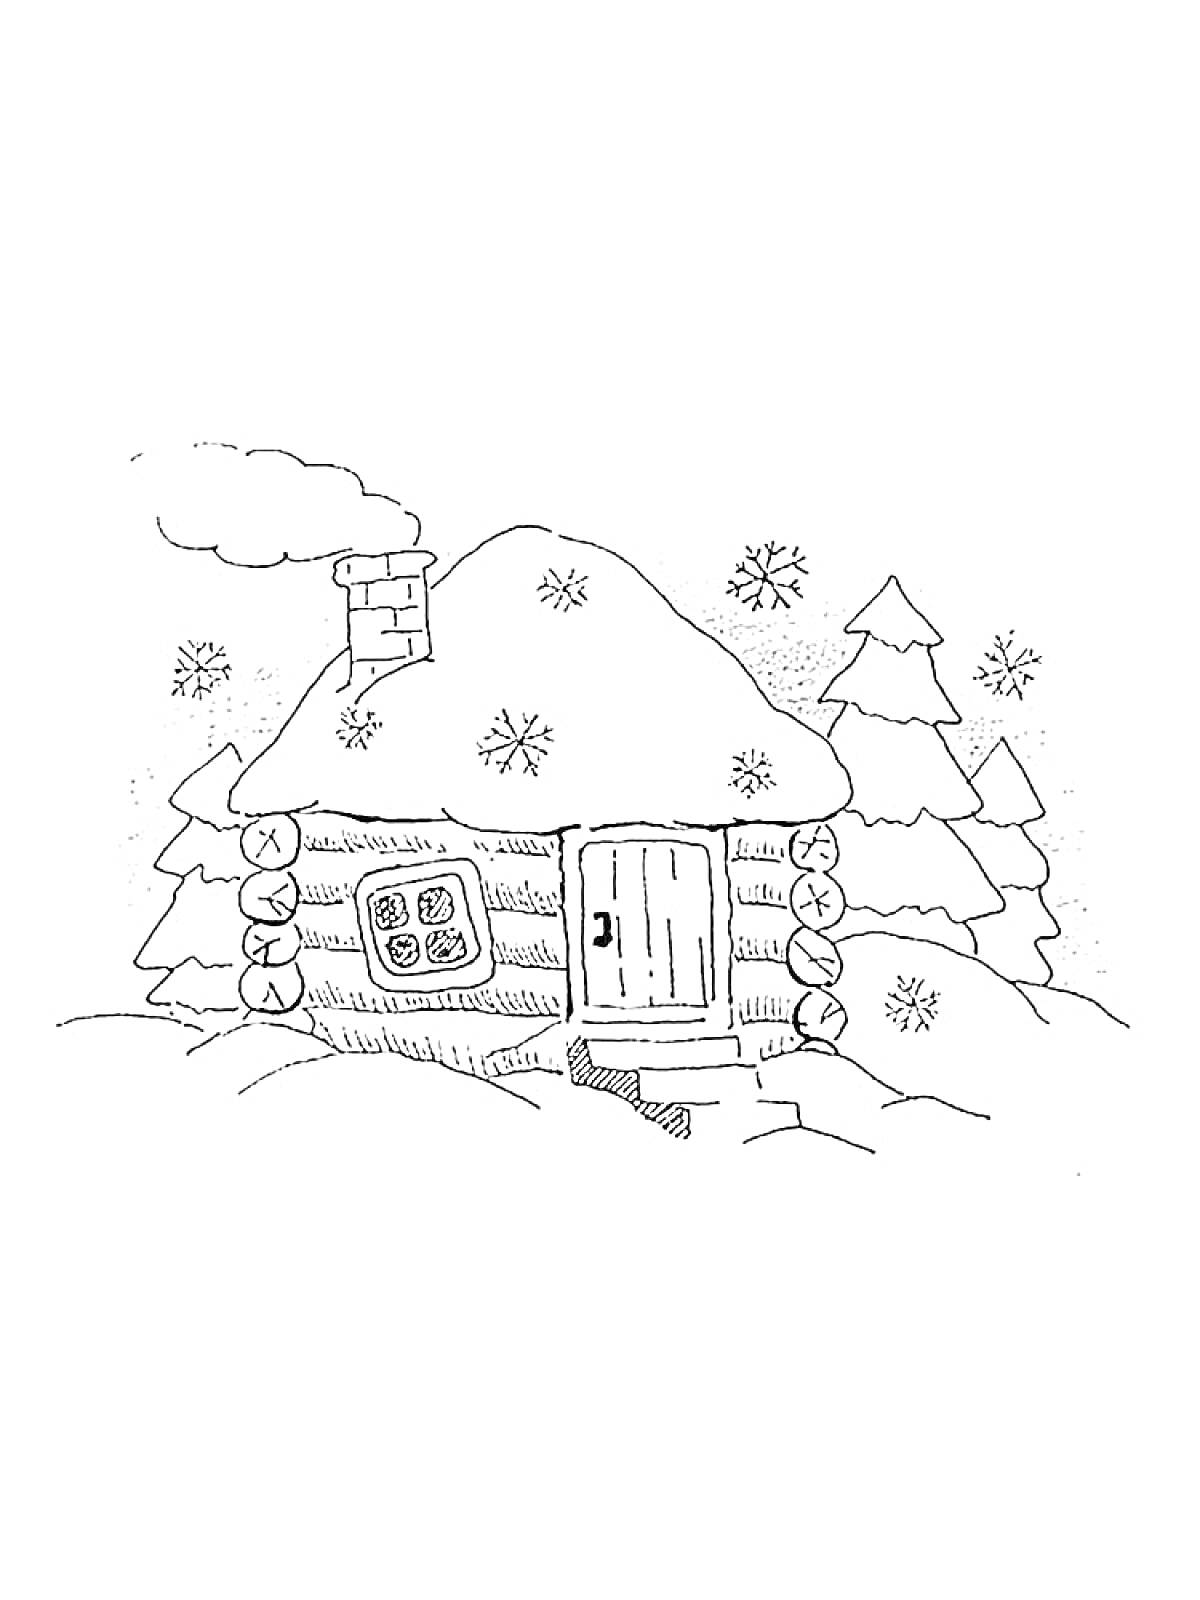 Раскраска Изба зимой с дымом из трубы, заснеженная крыша, снежинки, ёлки, заснеженный ландшафт